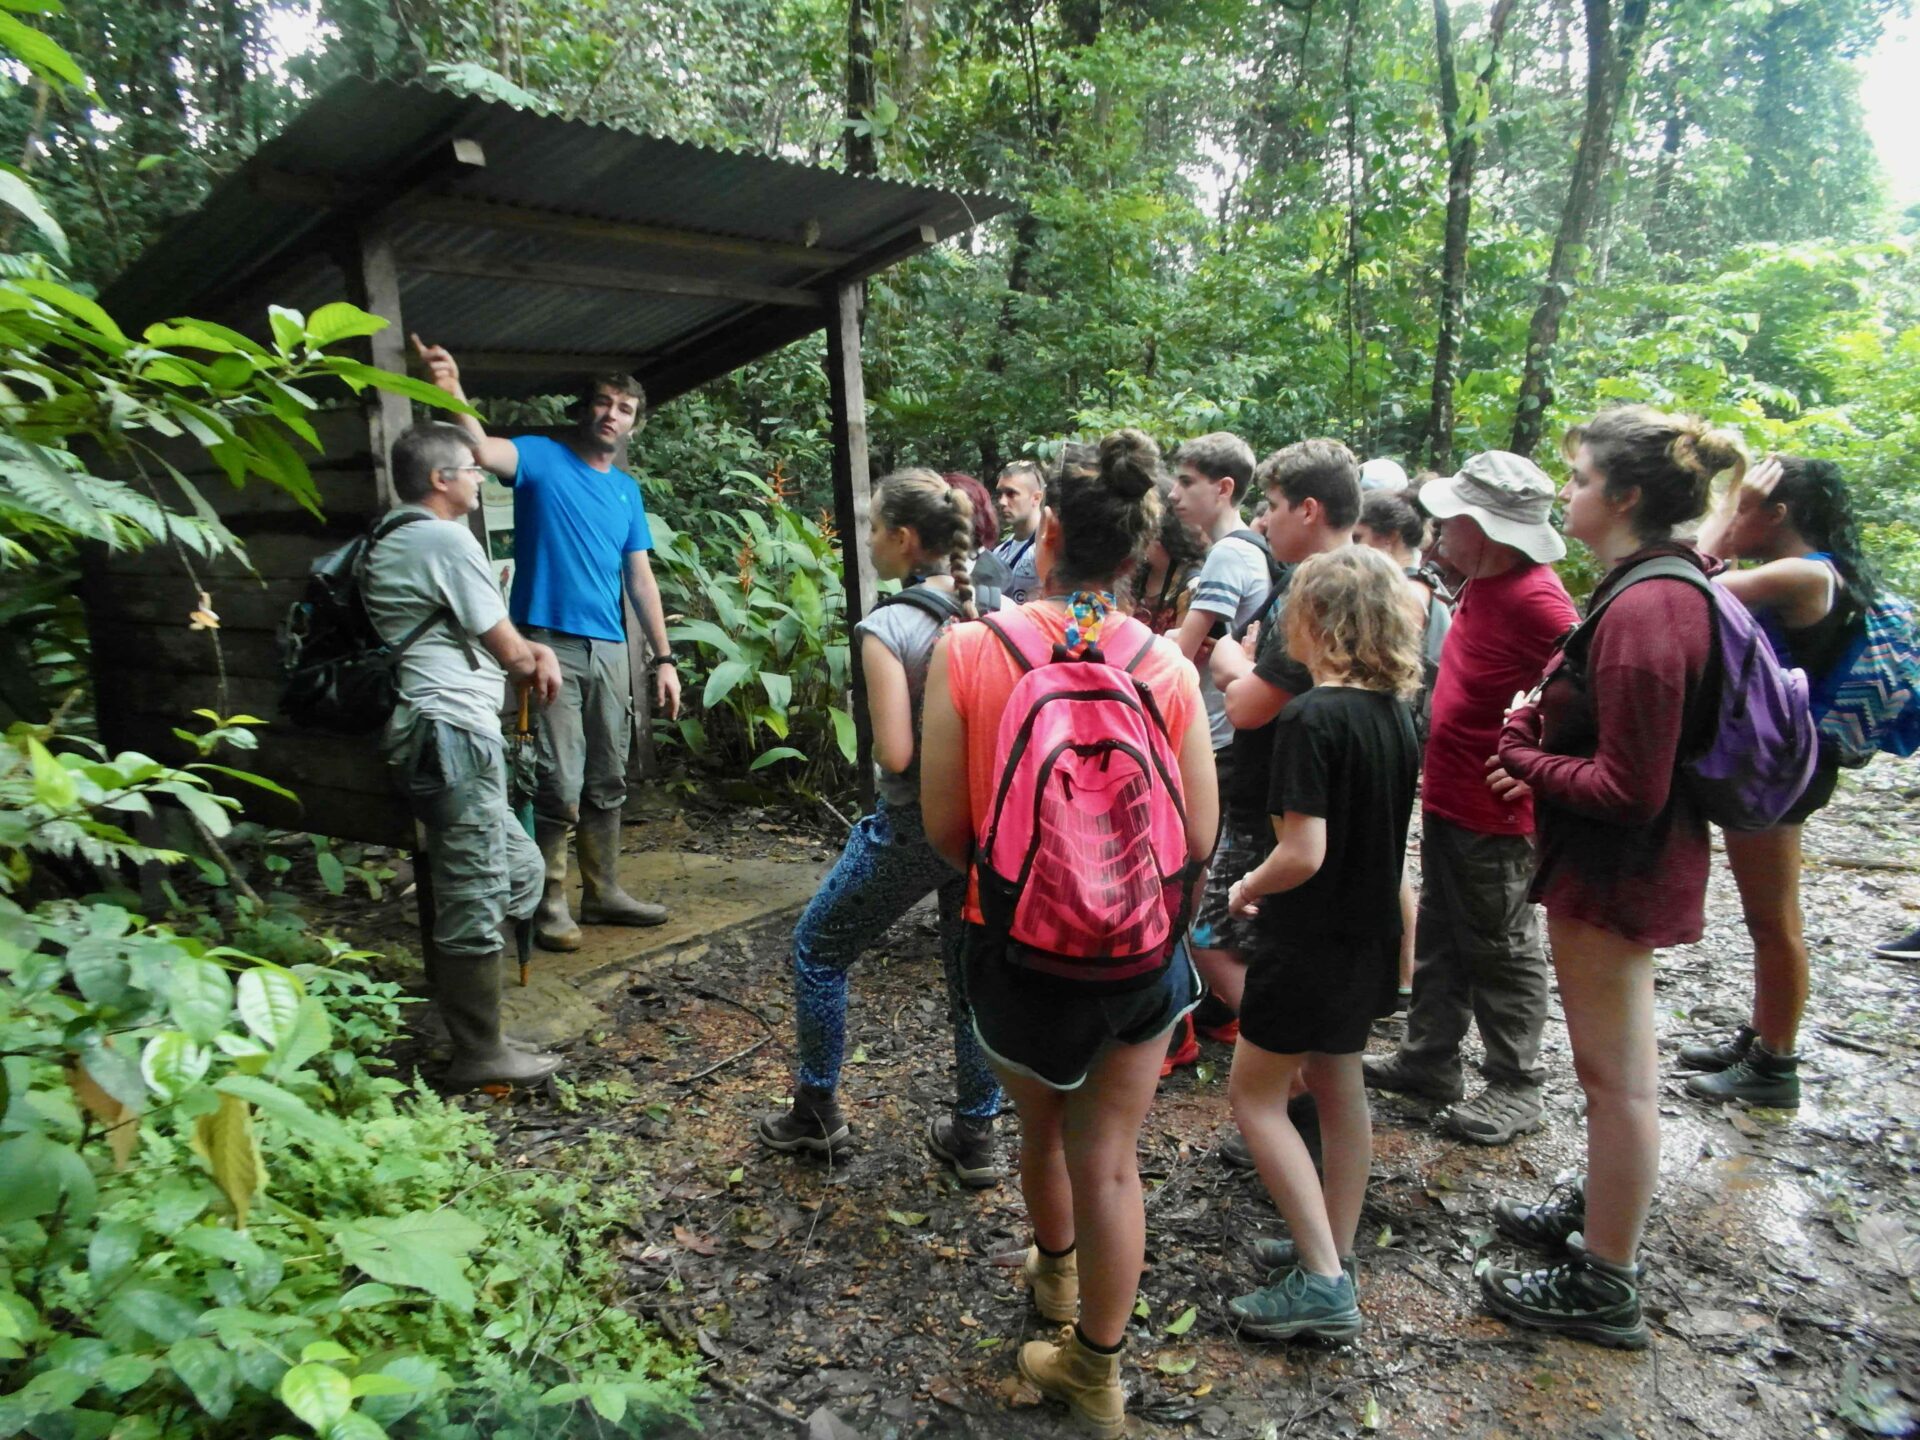 Boswachters van Trésor in het regenwoud die een schoolklas een rondleiding geven